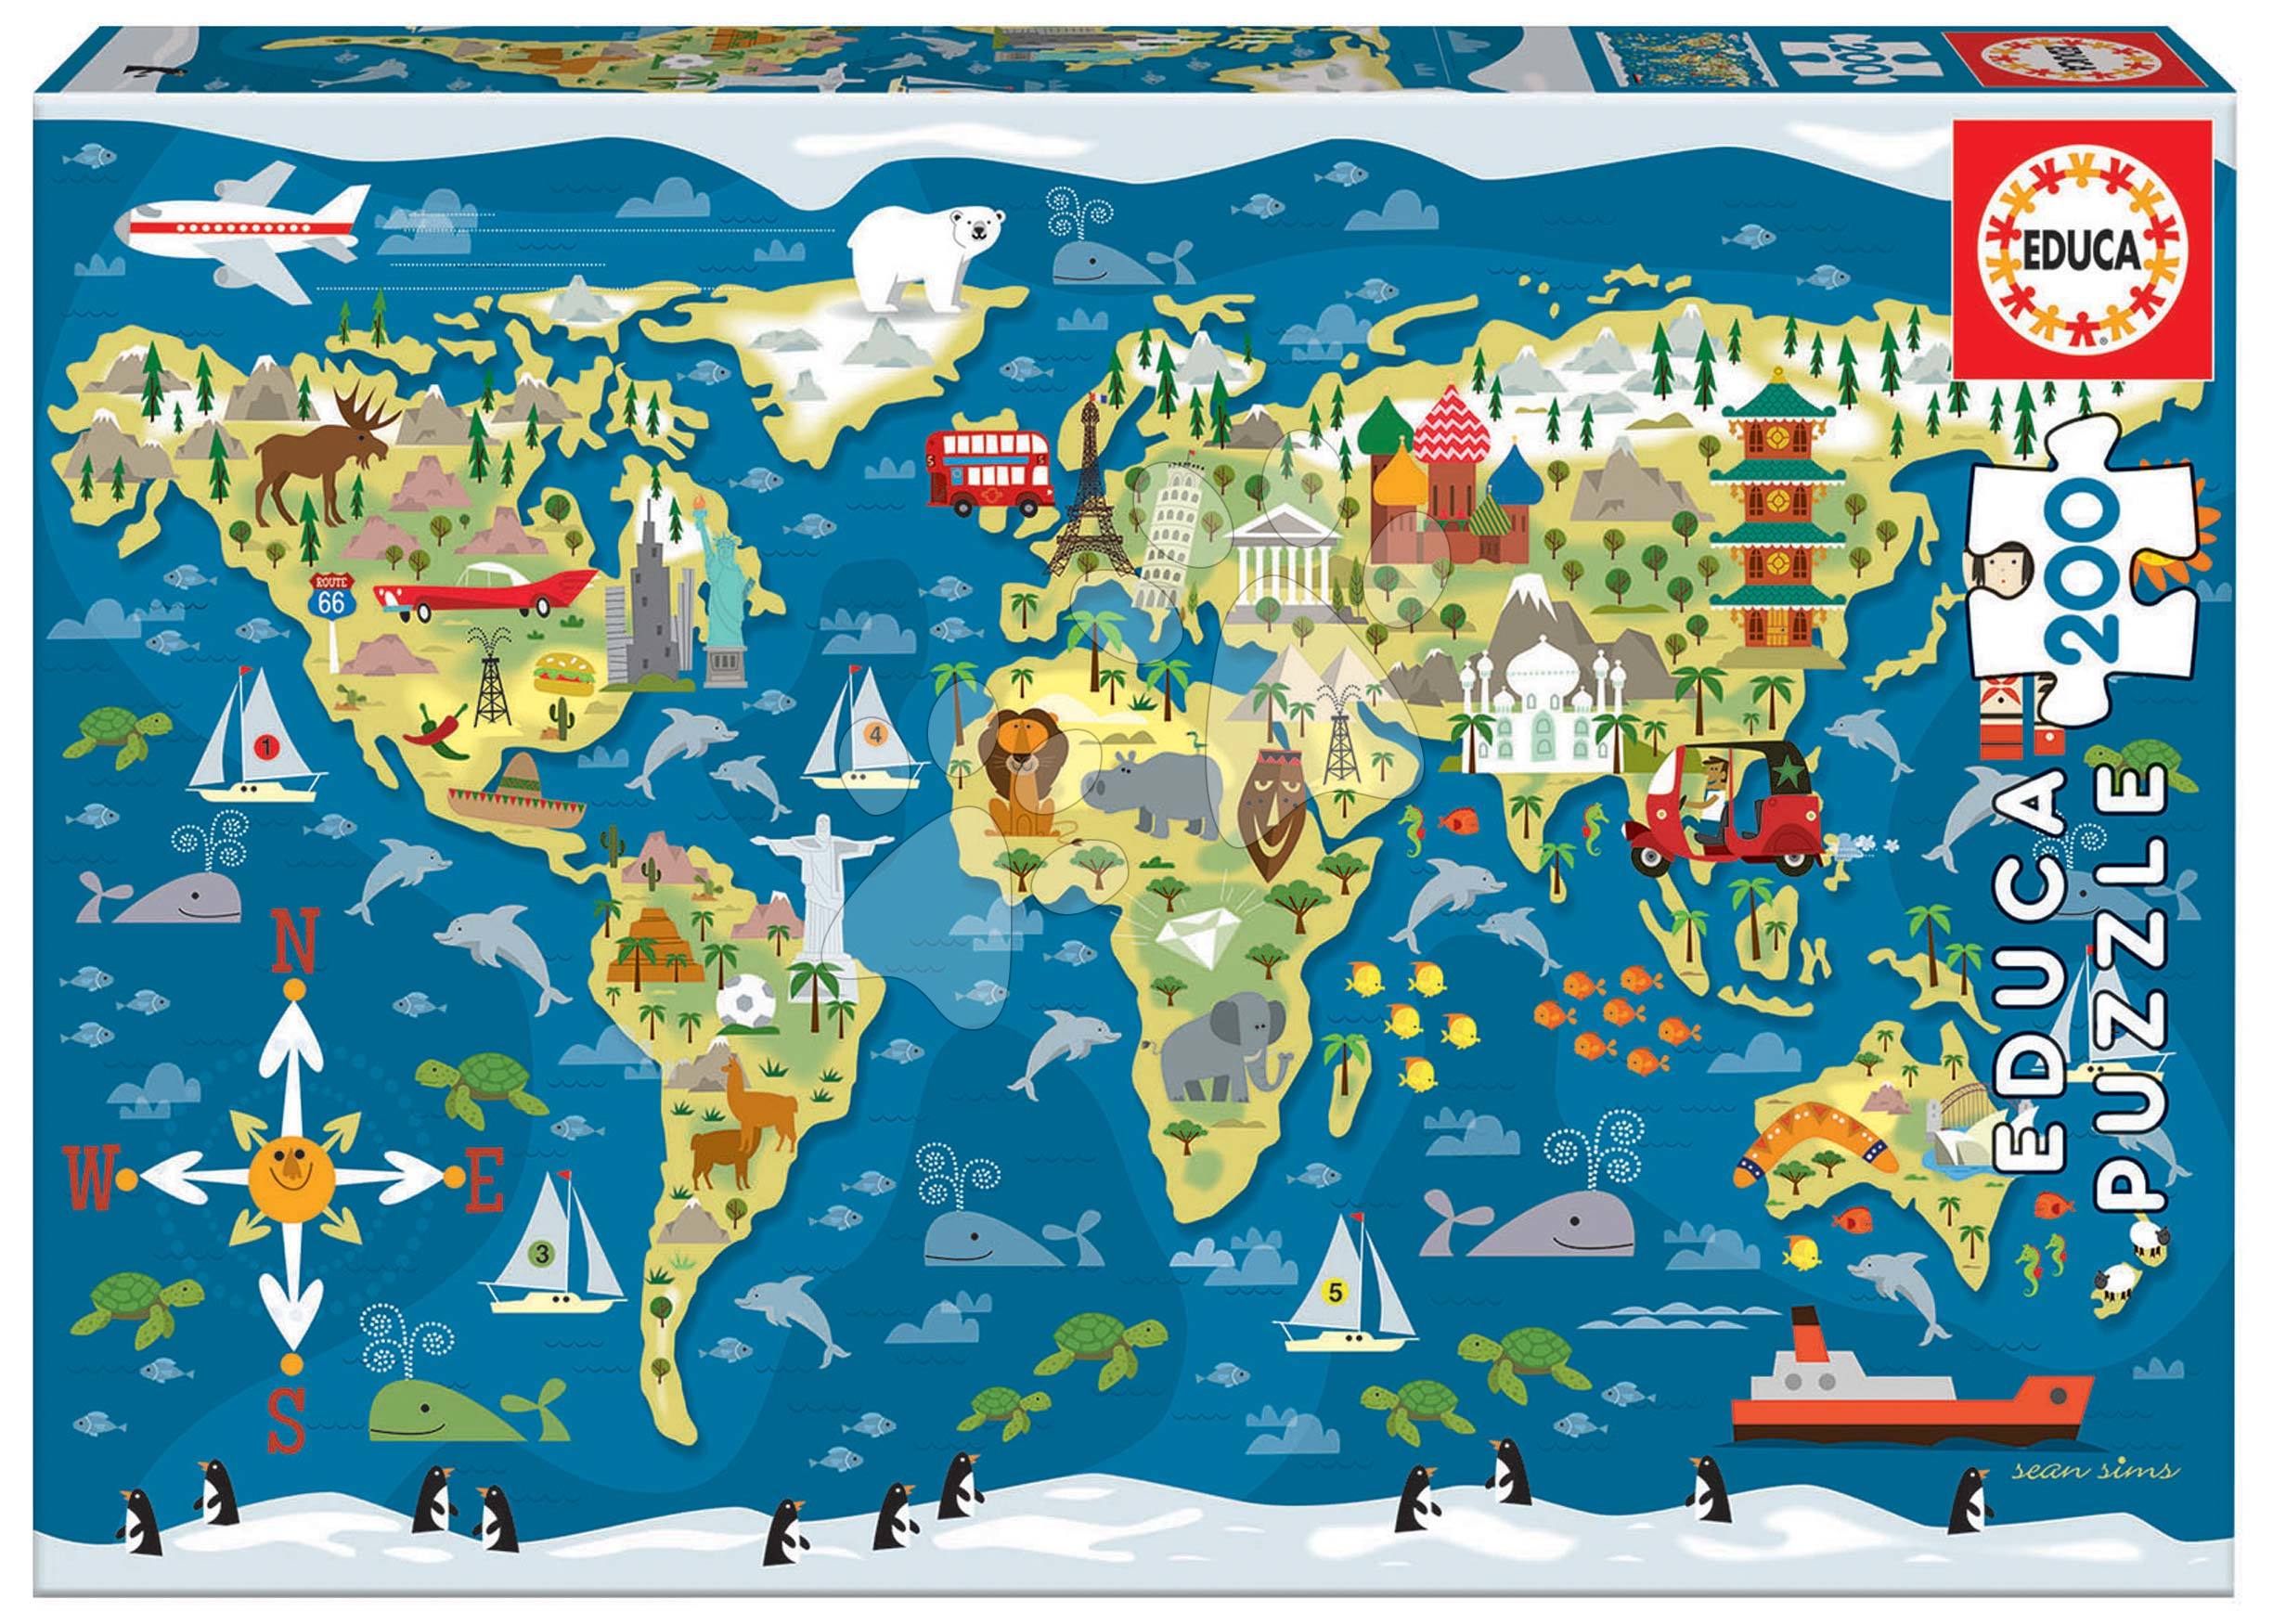 Puzzle World Map Sean Sims Educa 200 dílků